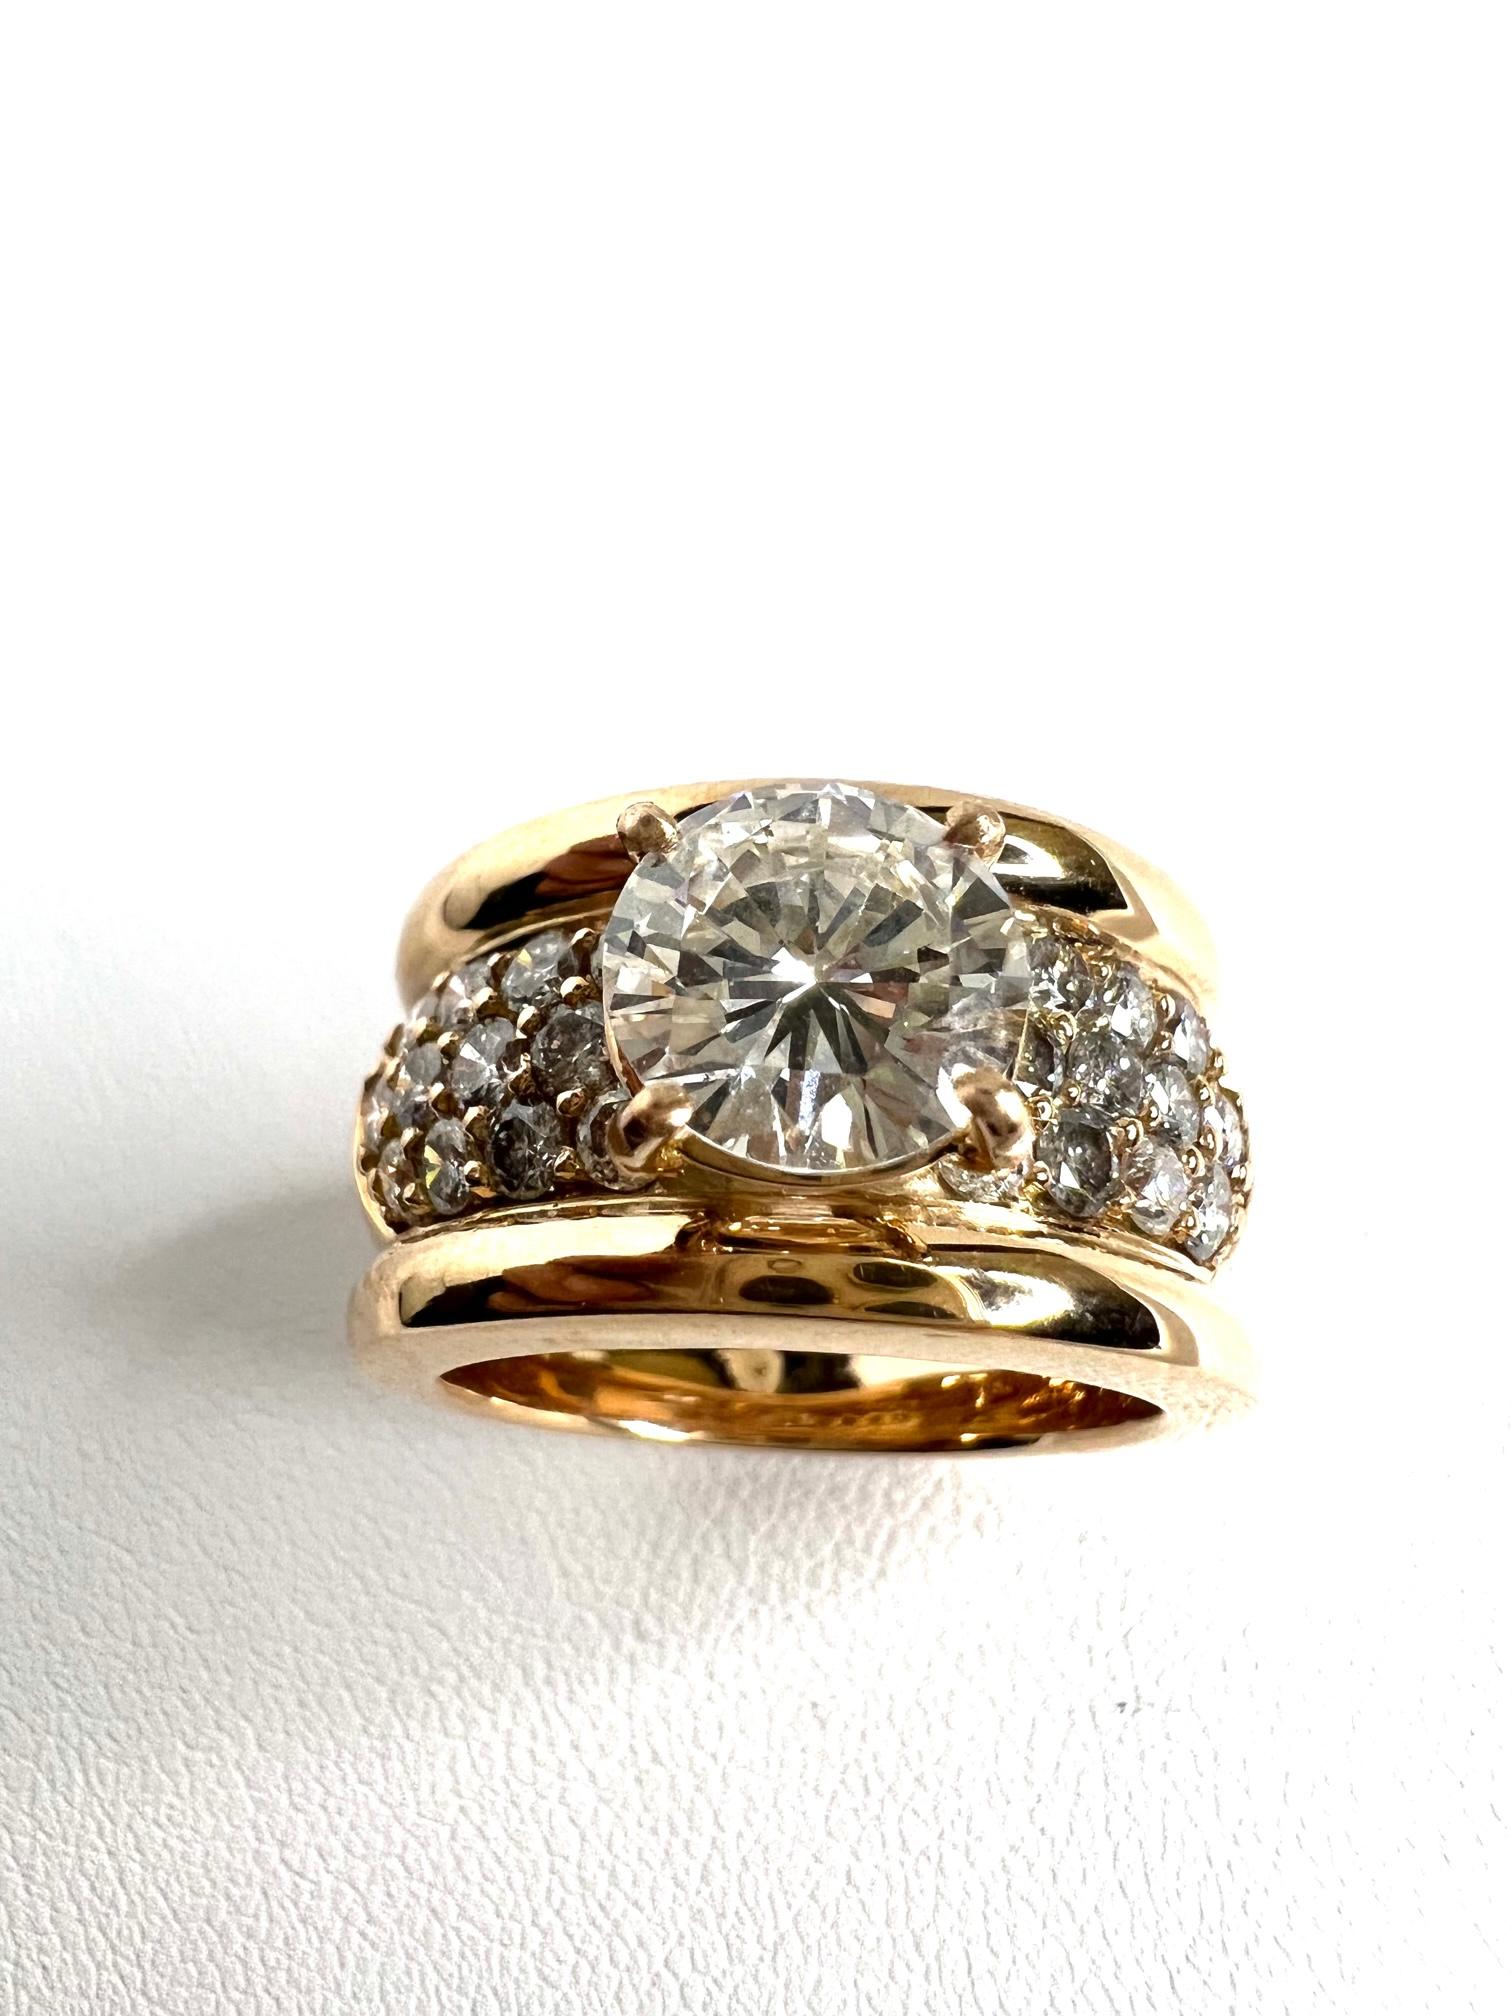 Thomas Leyser est réputé pour ses créations de bijoux contemporains utilisant des pierres précieuses fines.

Bague en or rouge 18k (15,2gr.) avec 1x diamant (rond, 8,2mm, G/VVS2, avec certificat DPL, 1,732cts.) + 24x diamants (G/VS,